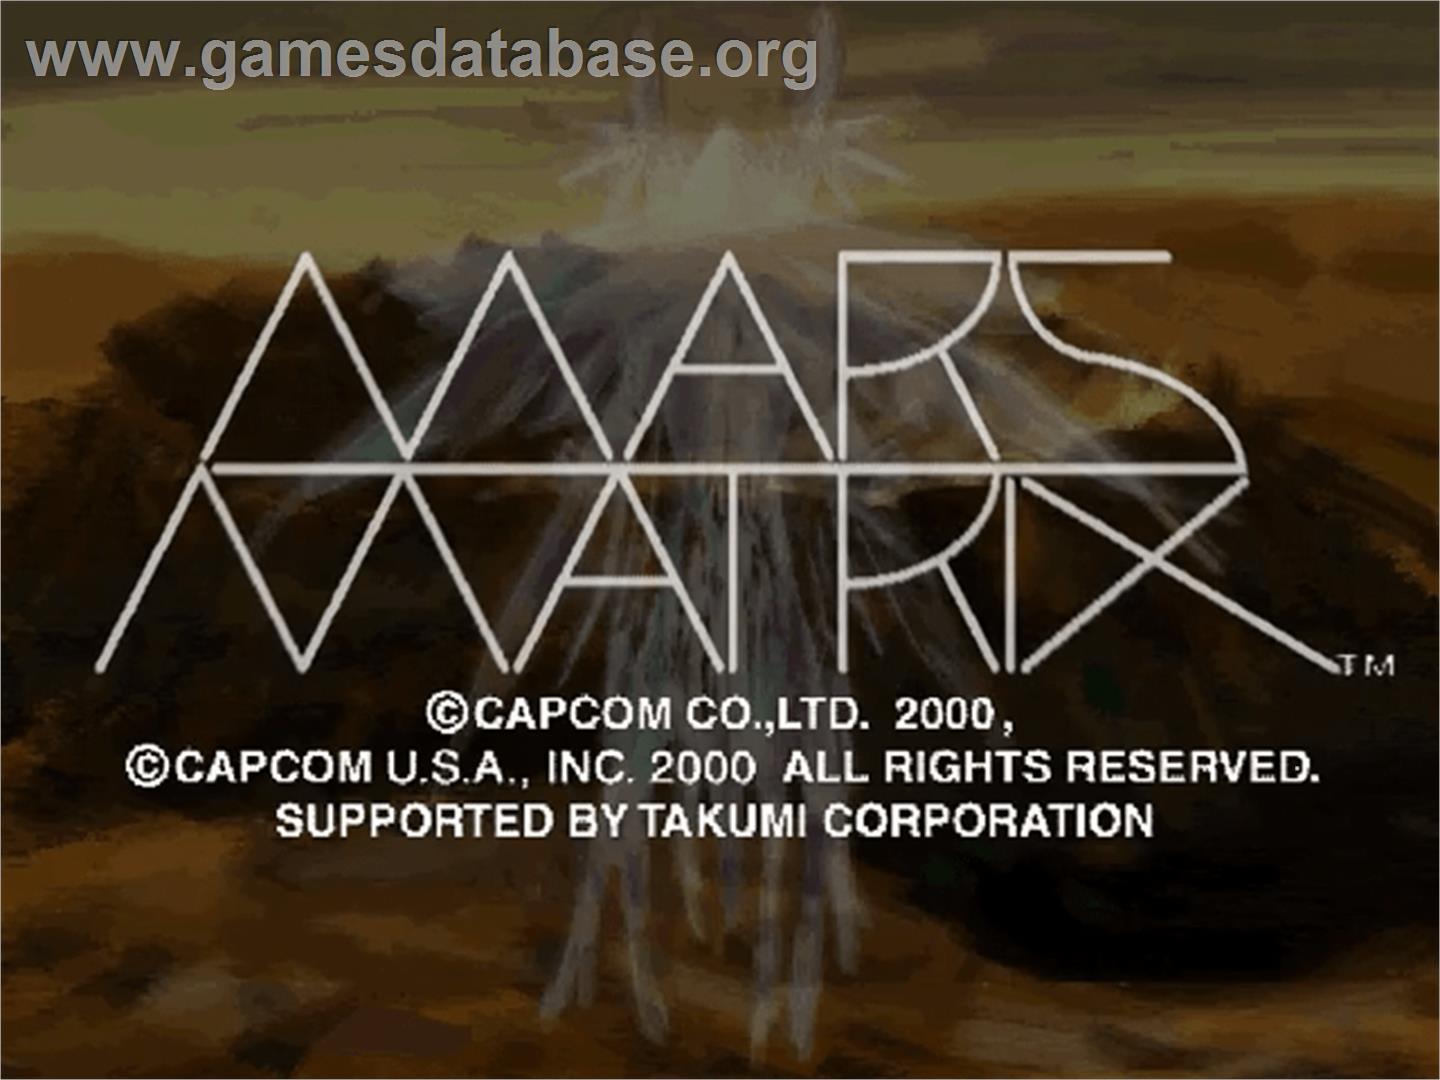 Mars Matrix - Sega Dreamcast - Artwork - Title Screen